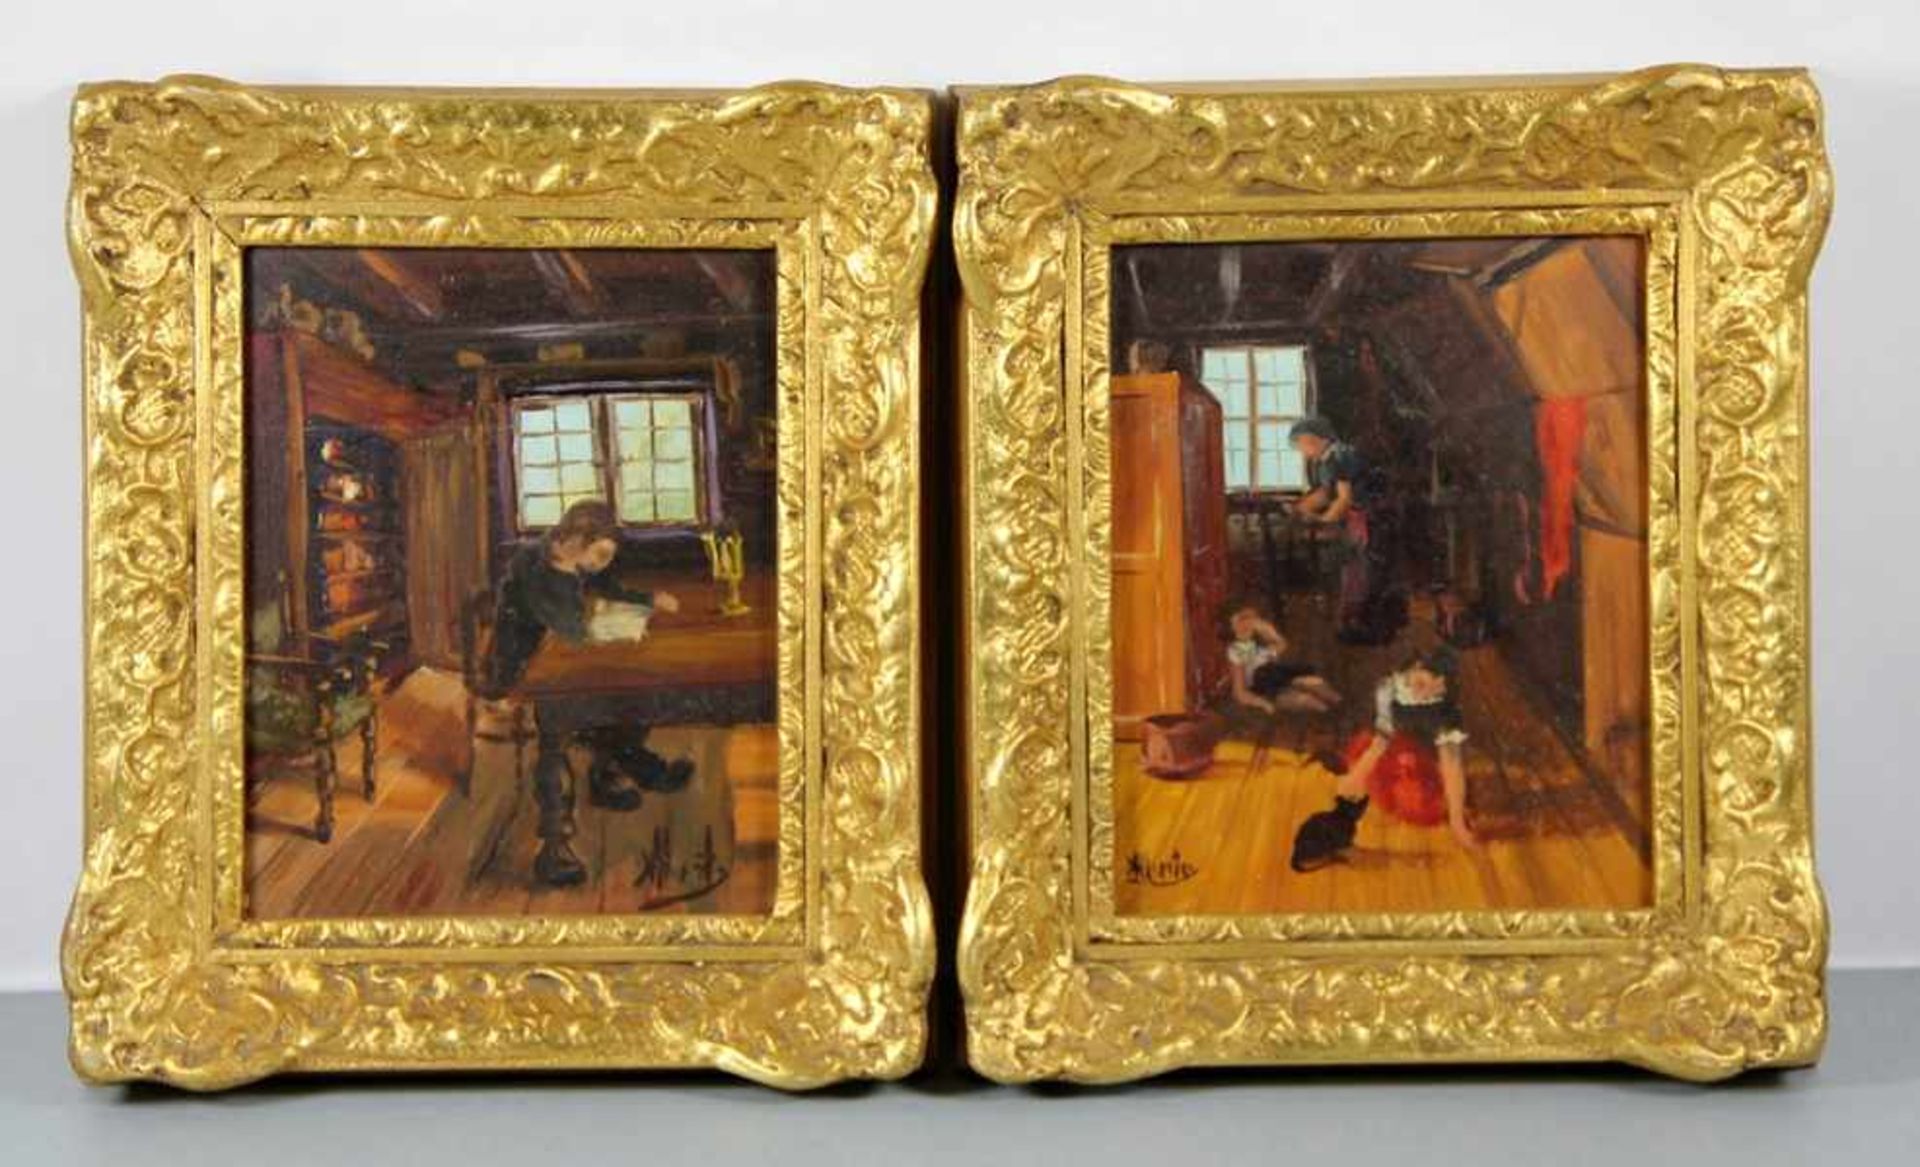 paar Gemäldeum 1900/20 , zwei Interieurgemälde , jeweils mit Kindern in der Stube, nicht lesbar